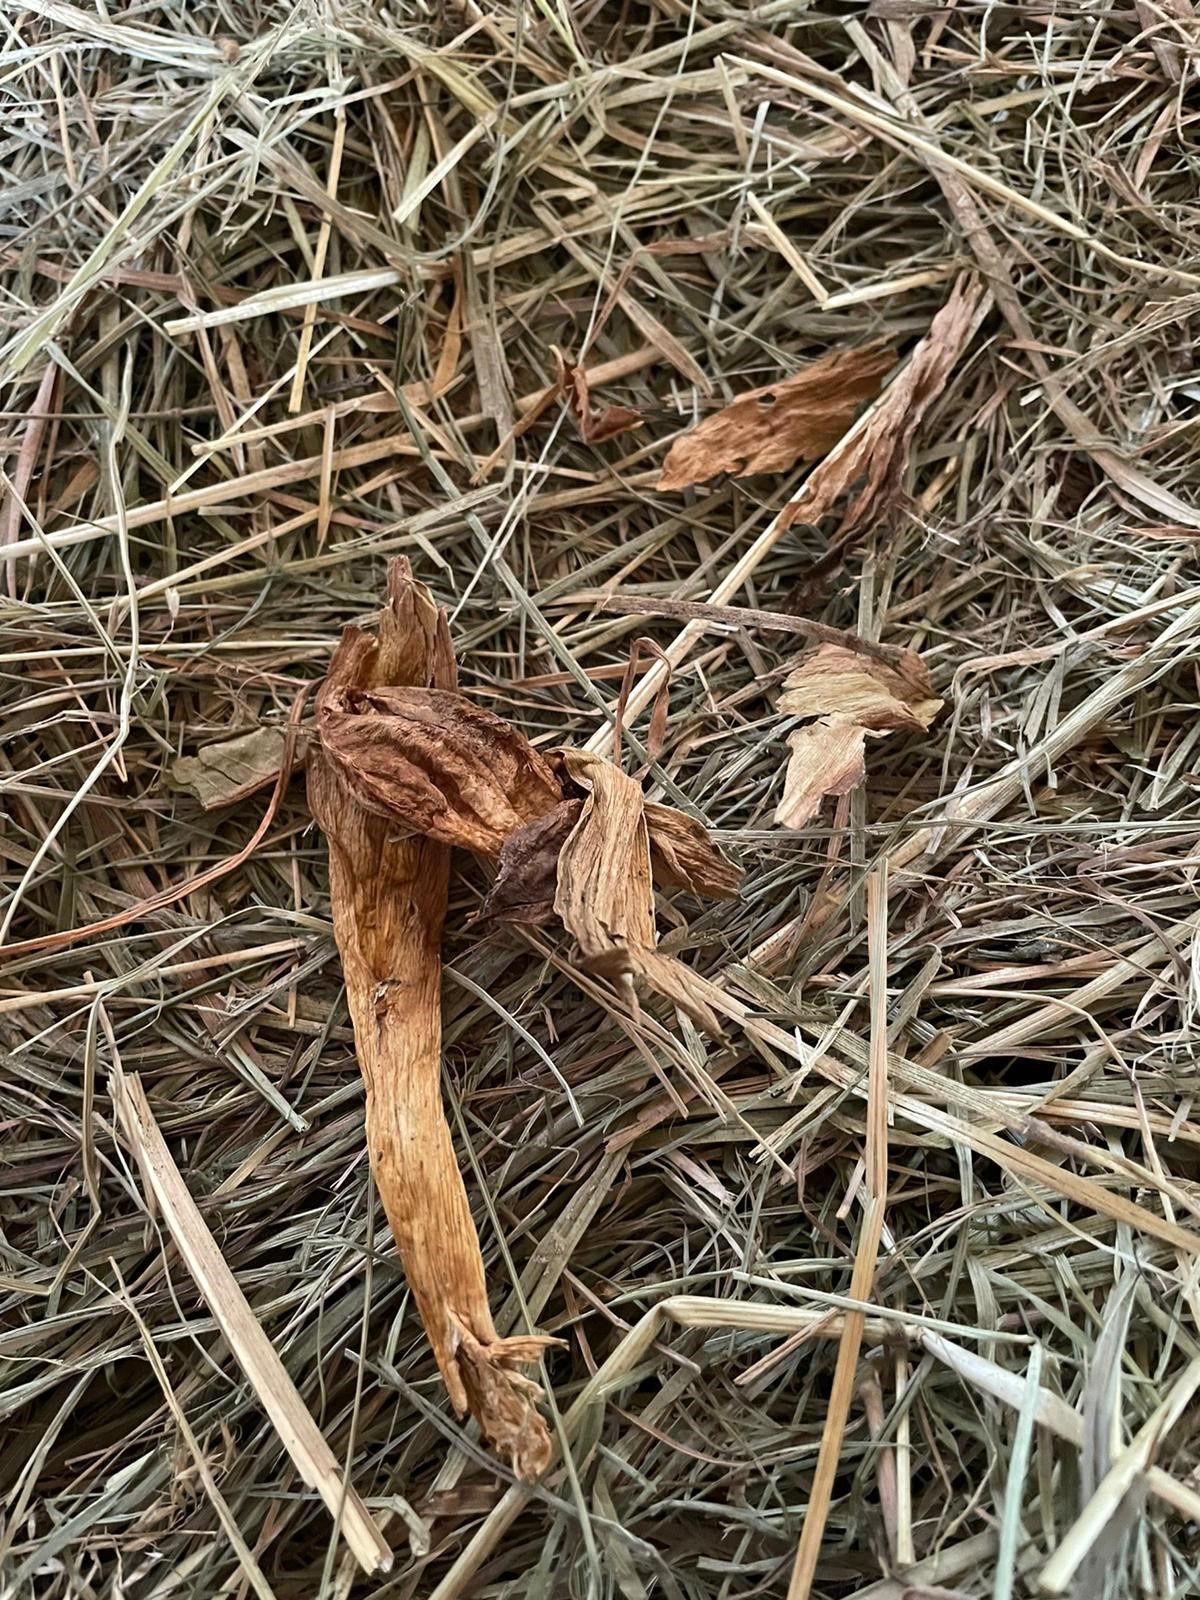 meadow saffron dried in hay